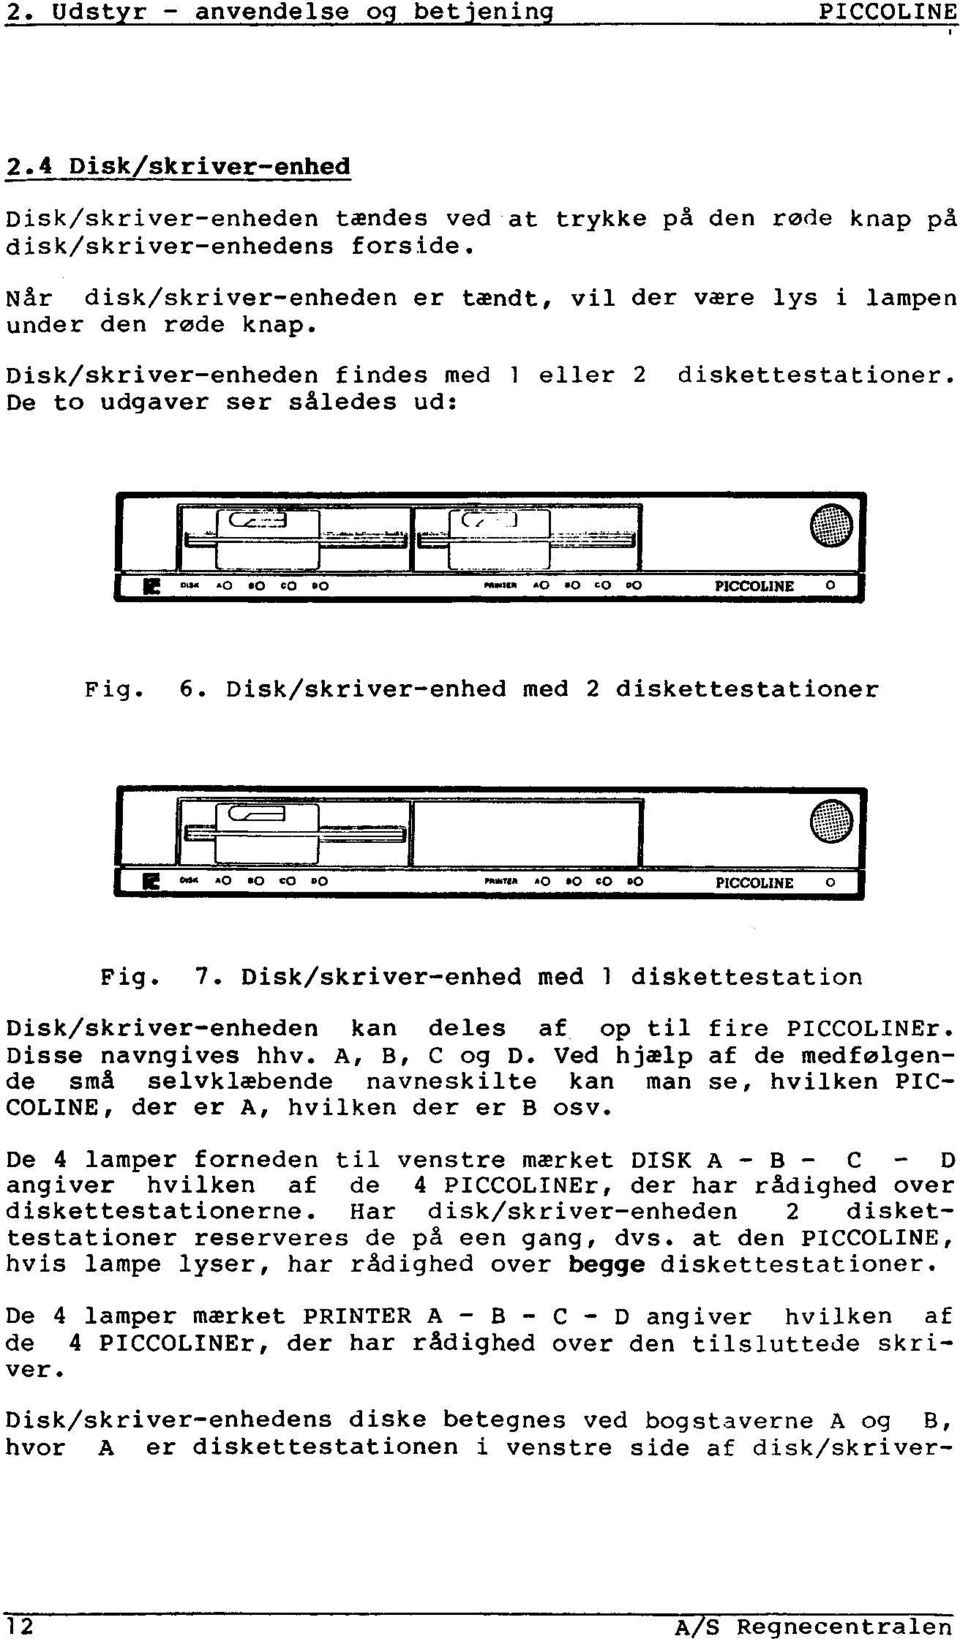 Disk/skriver-enhed med 2 diskettestationer "W" ^0 &#39;Ö 0 0 PICCOLXNE 0 Fig. 7. Disk/skriver-enhed med 1 diskettestation Disk/skriver-enheden kan deles af_ op til fire PICCOLINEr.